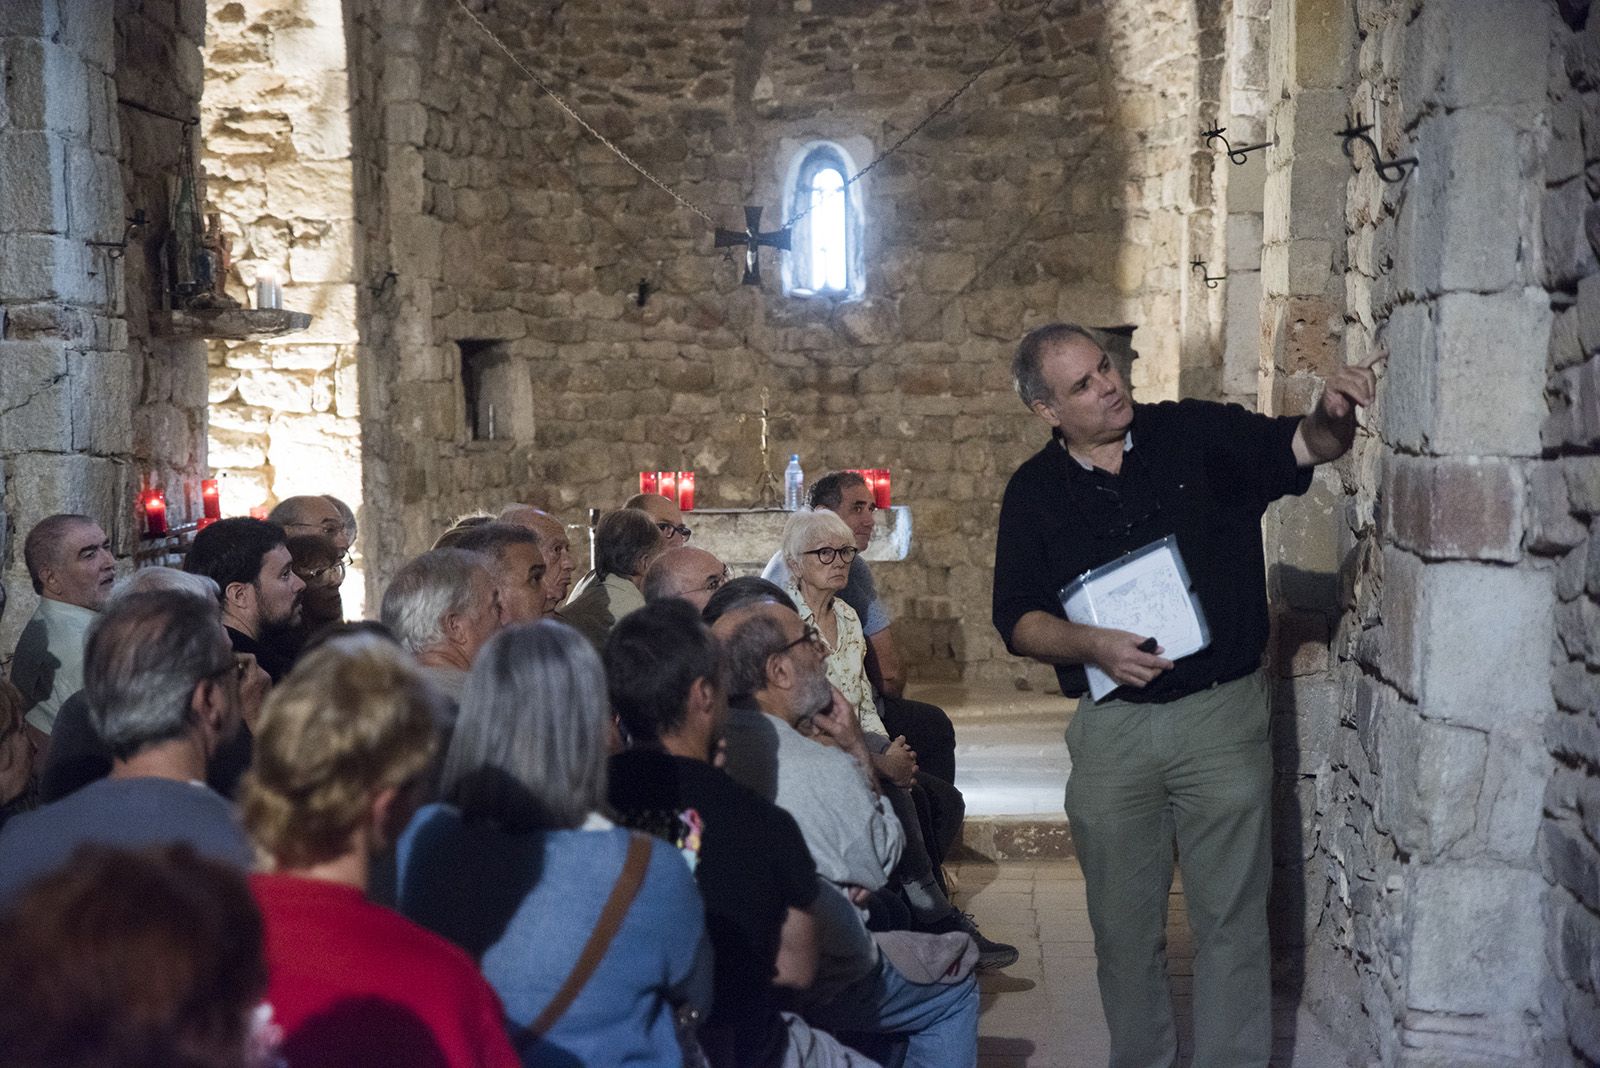 Visita comentada per el President de l'EMD de Valldoreix el Sr. Juanjo Cortés a l'Ermita de la Salut. Foto: Bernat Millet.